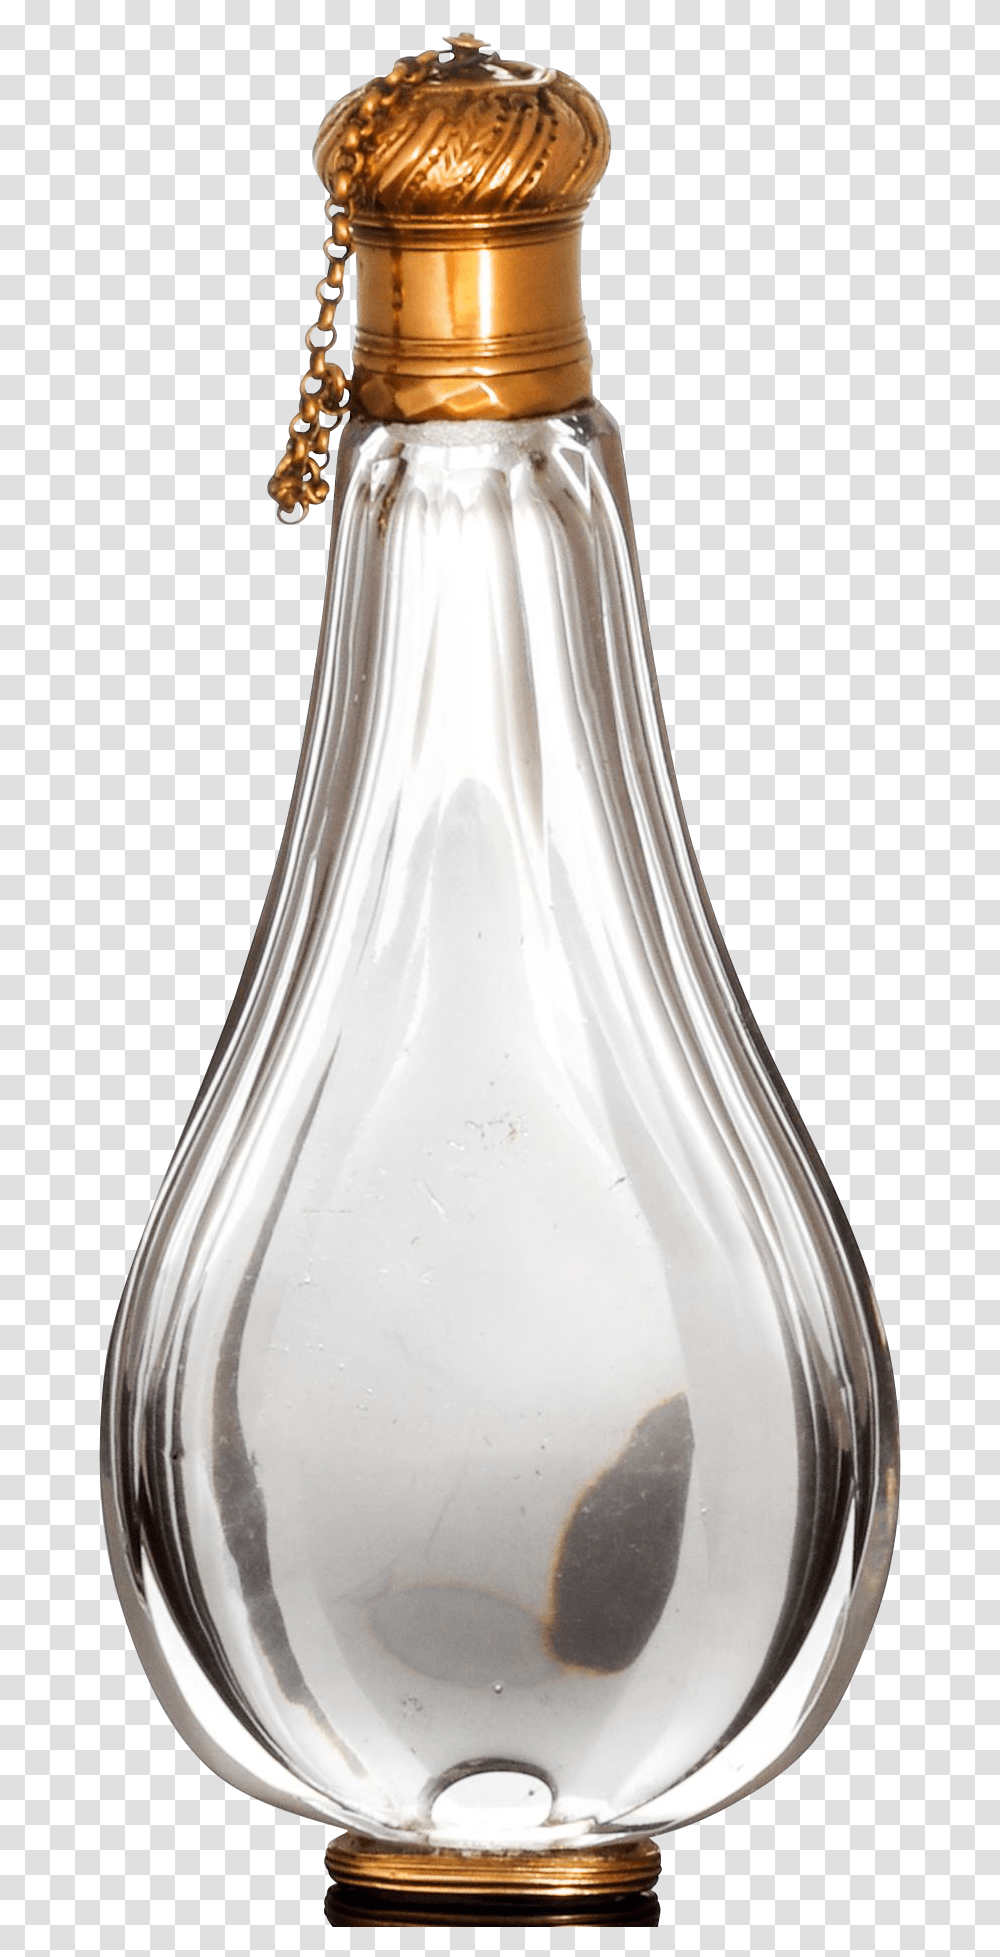 Gold Champagne Bottle Background Perfume Bottle, Milk, Beverage, Vase, Jar Transparent Png